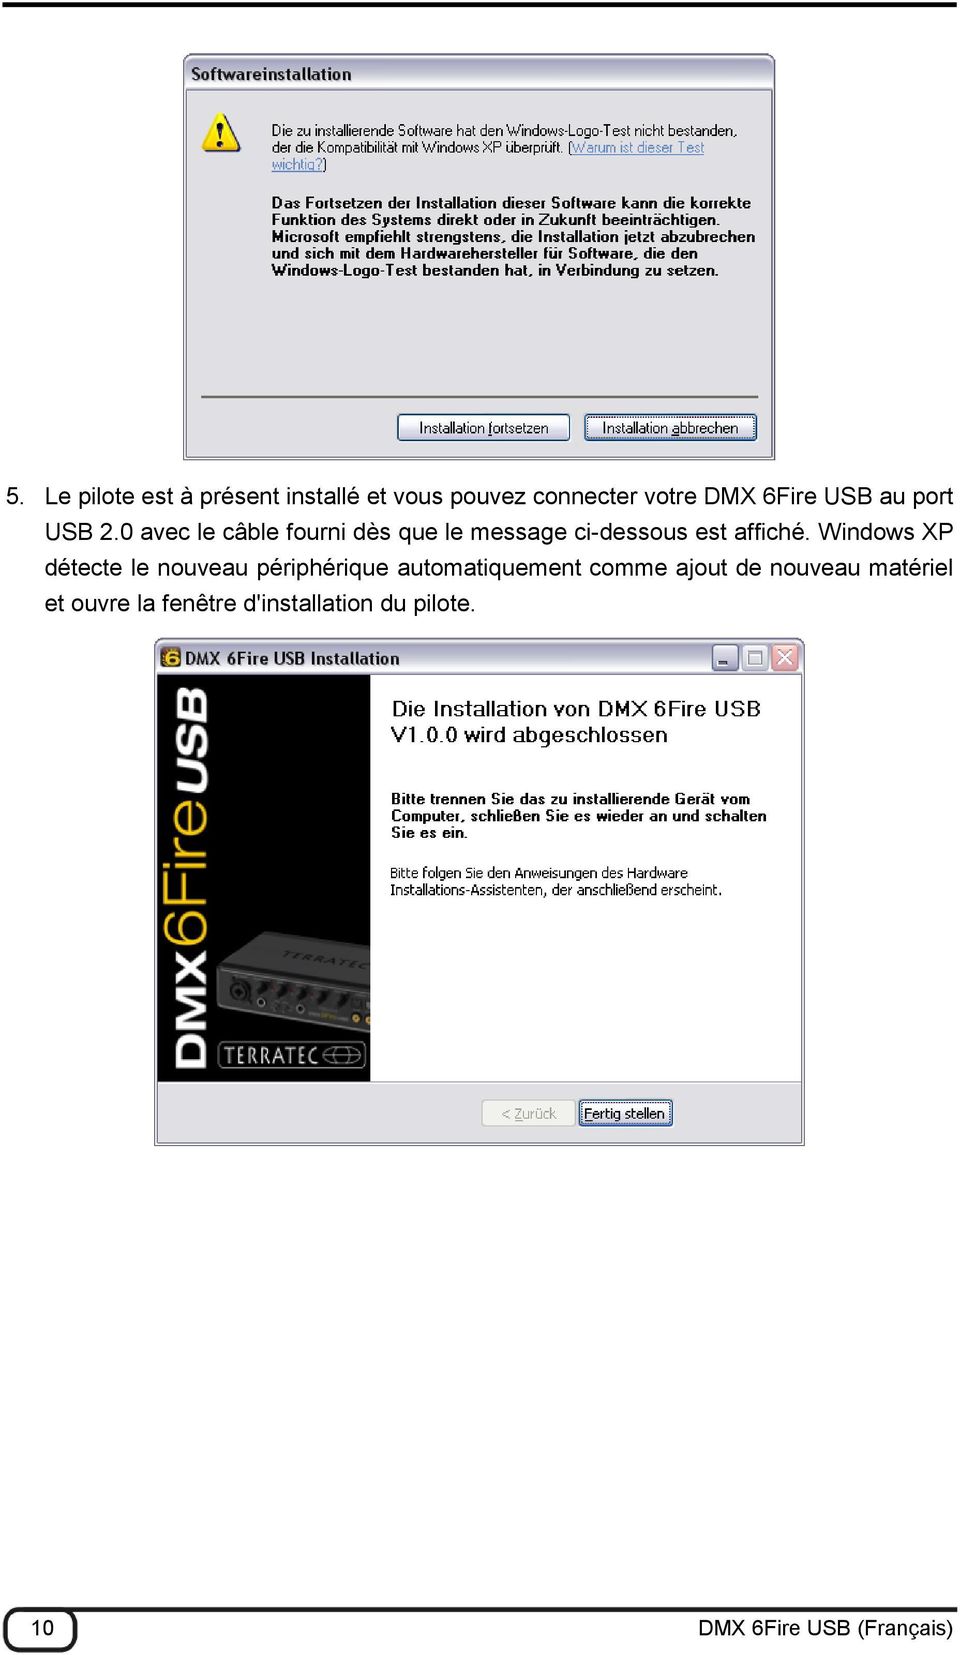 Windows XP détecte le nouveau périphérique automatiquement comme ajout de nouveau